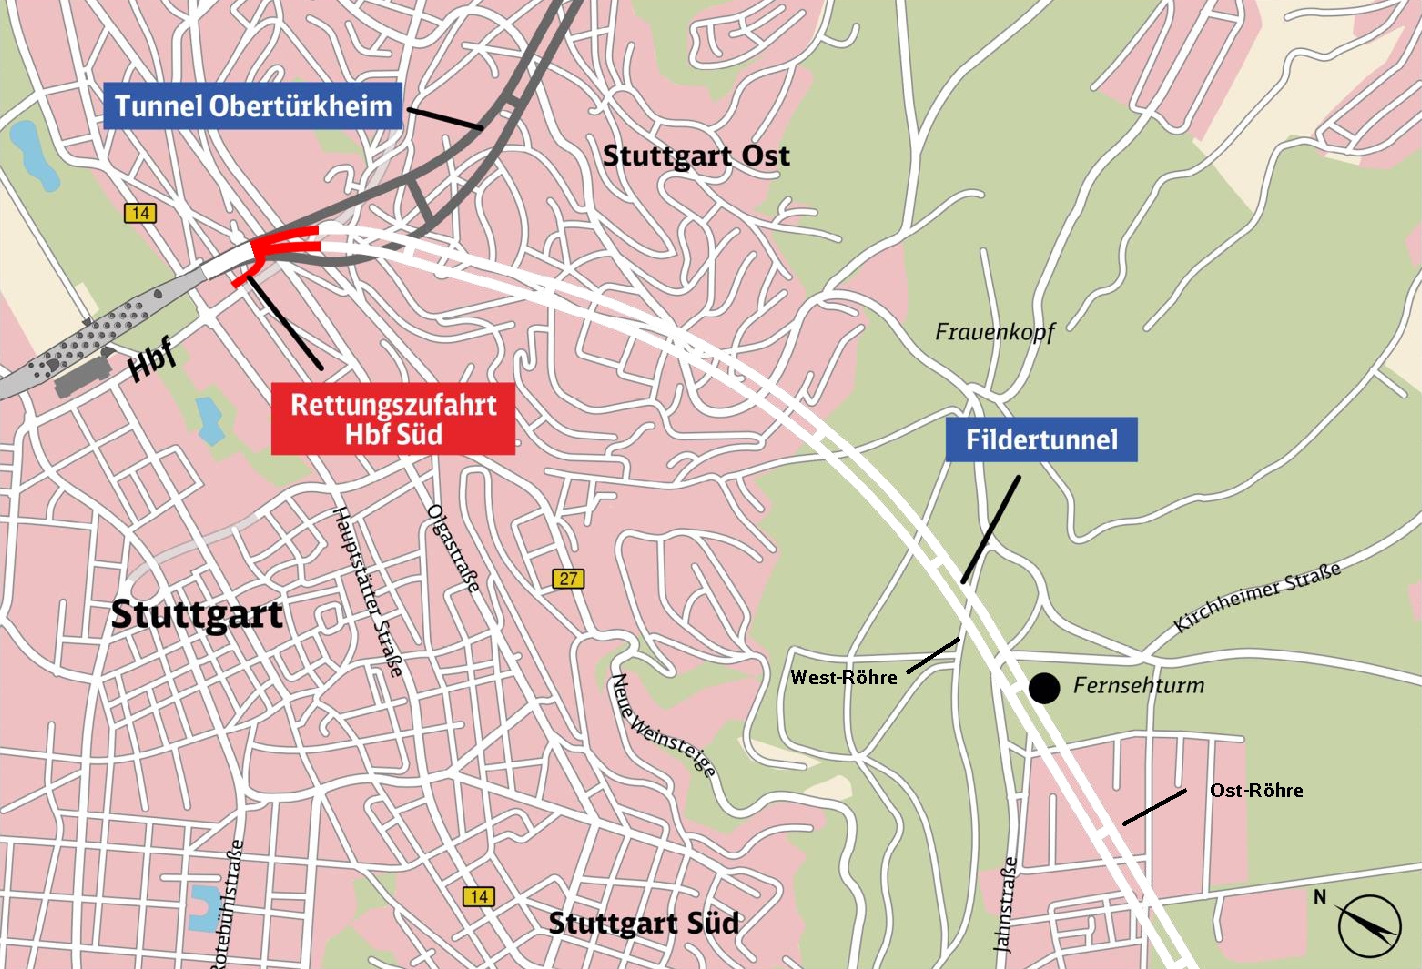 Halbzeit Beim Tunnelvortrieb Fur Stuttgart 21 Zum Aktuellen Baufortschritt In Den Einzelnen Stadtteilen Ende Mai 17 Netzwerke 21